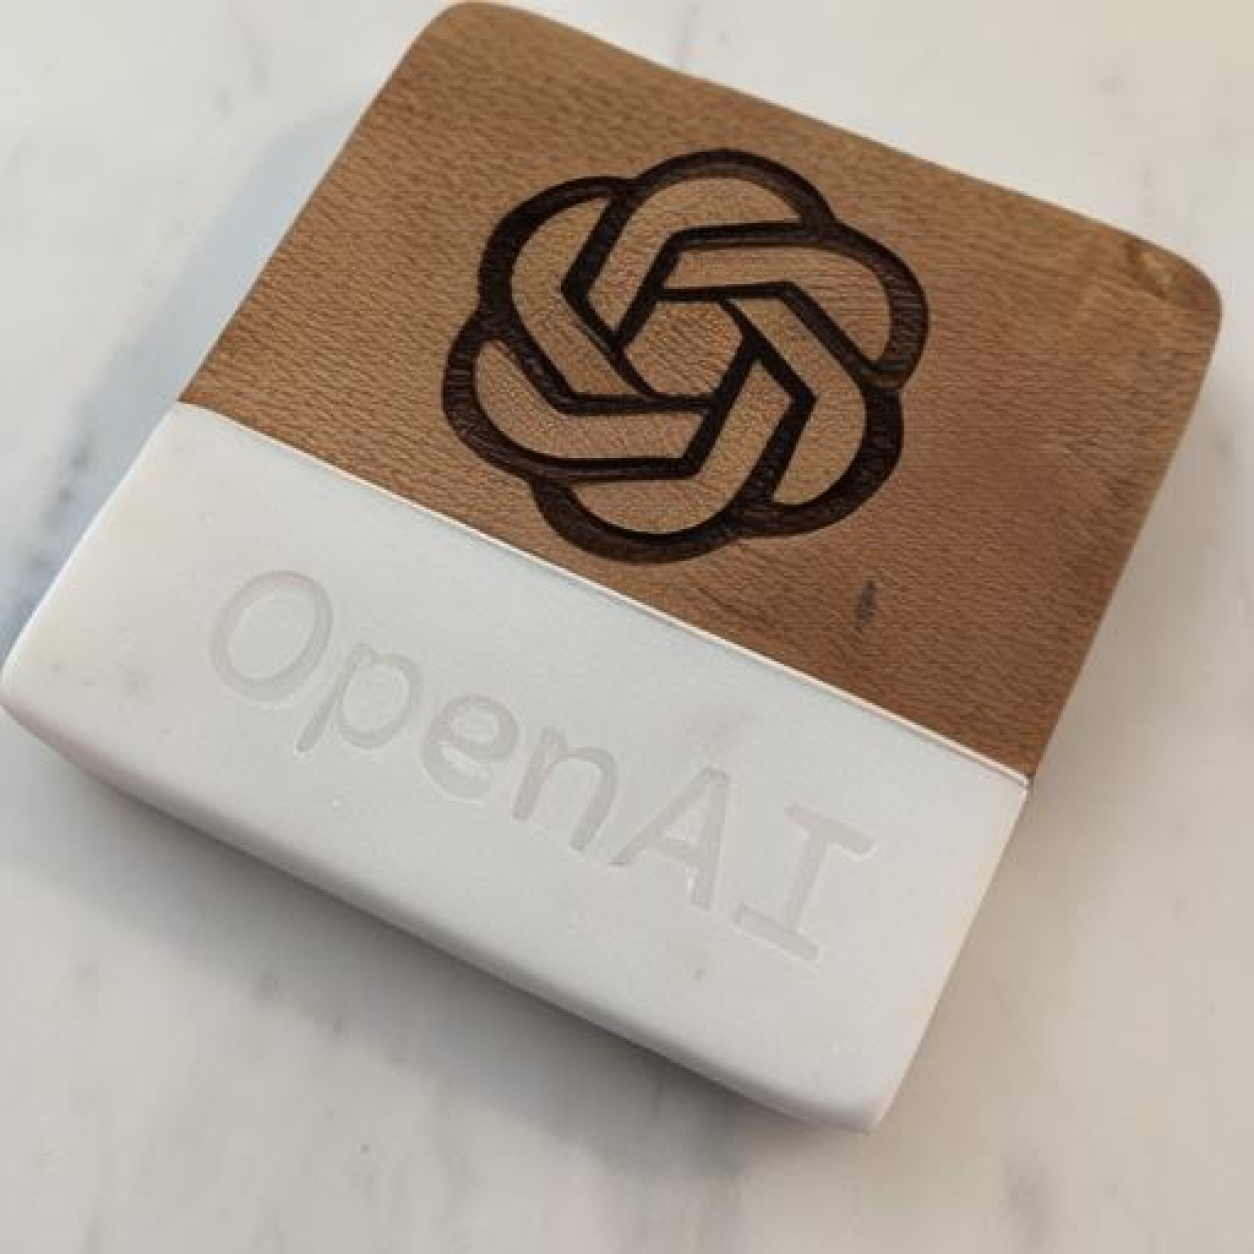 刻有 OpenAI 标志的杯垫